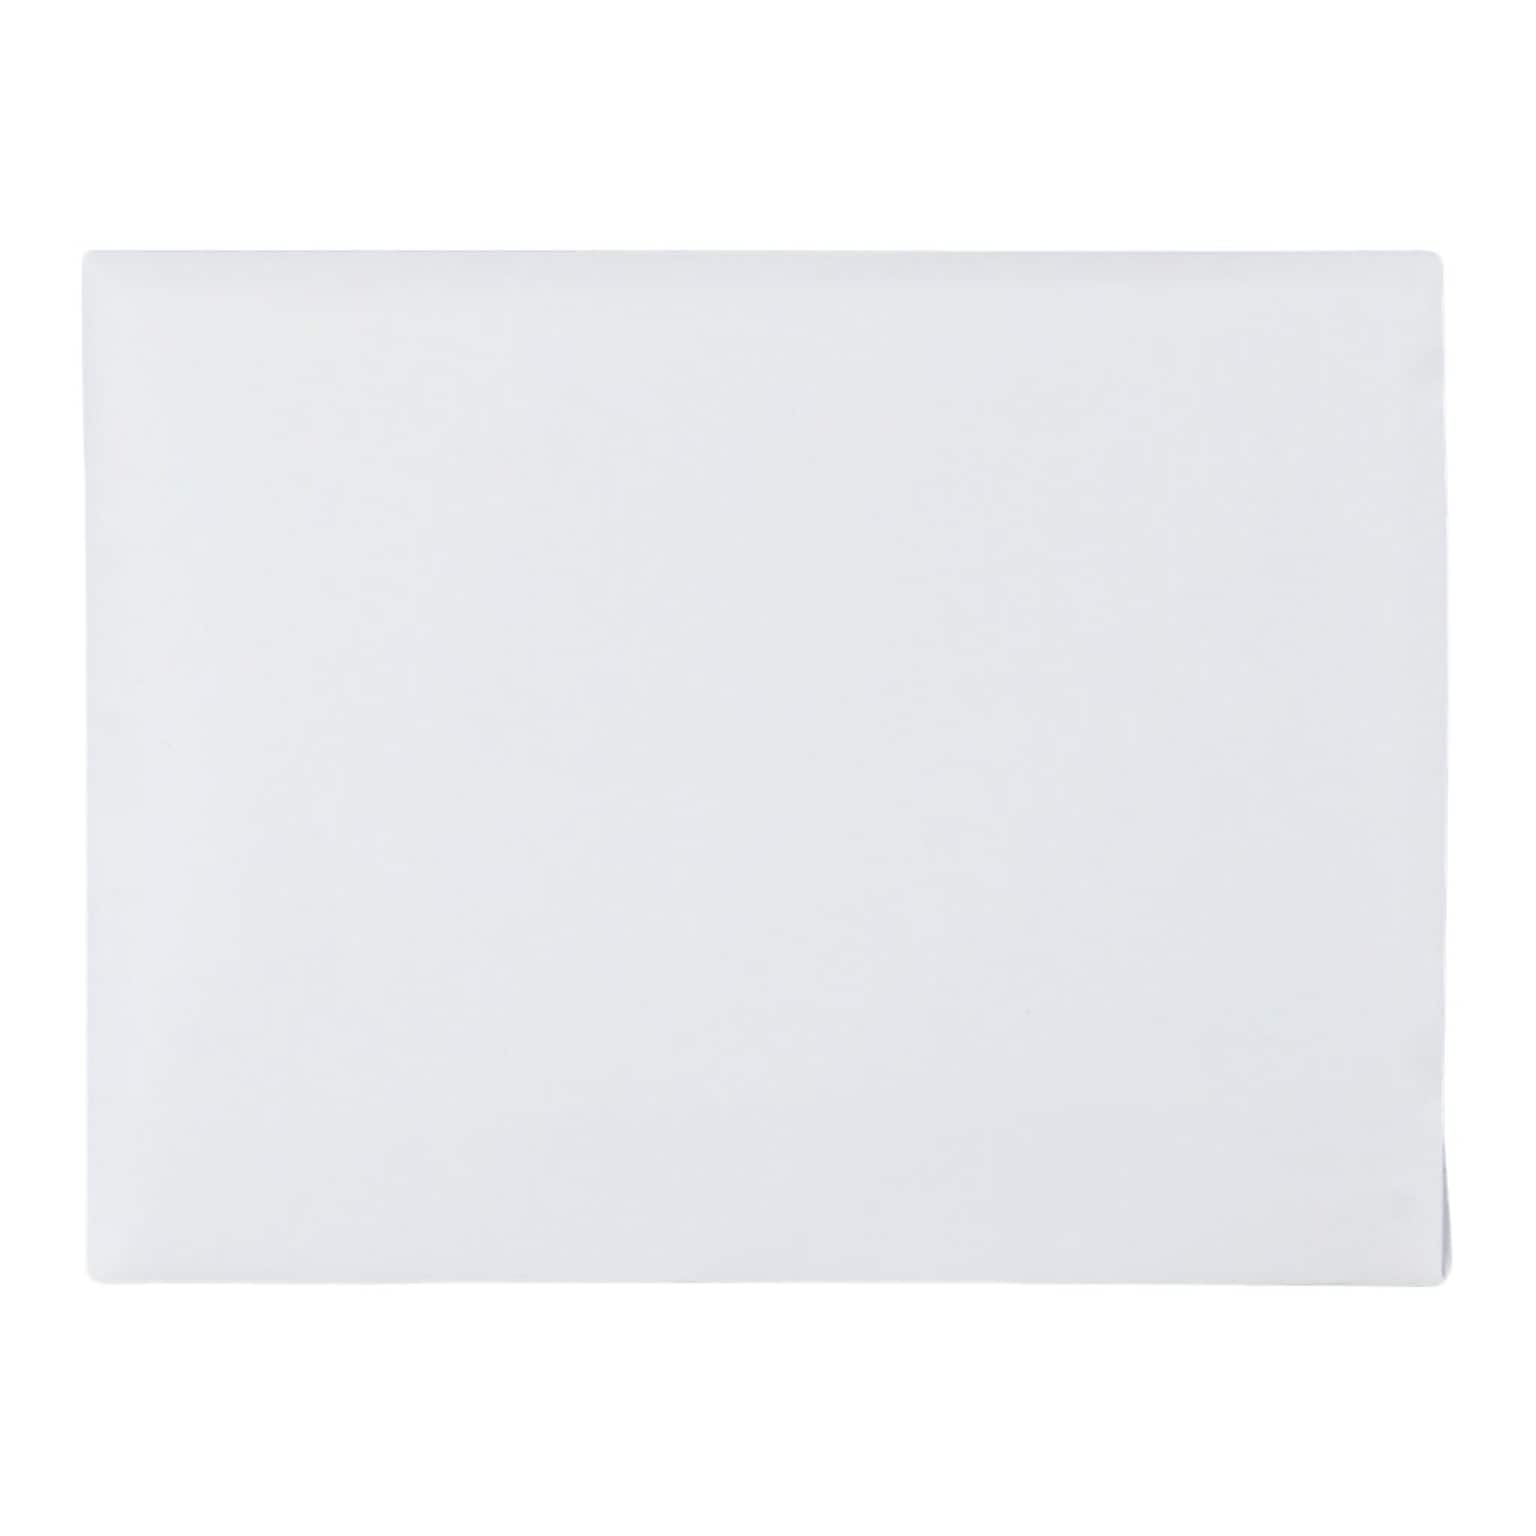 Quality Park Self Seal Invitation Envelopes, 5 3/4 x 4 3/8, White, 100/Box (QUA10740)